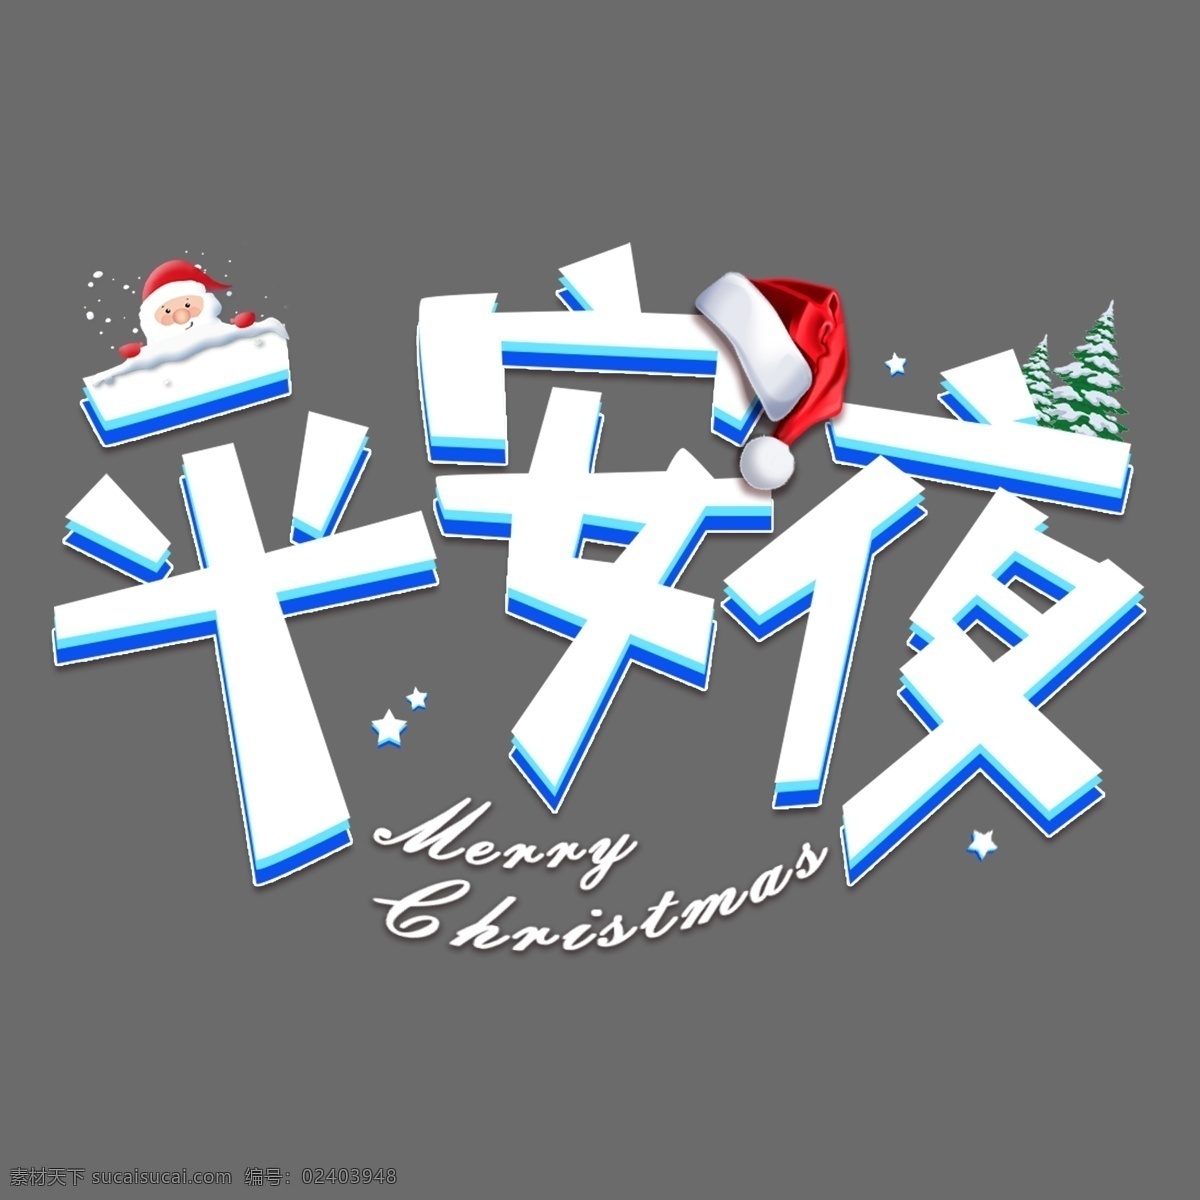 圣诞节 平安夜 节日 传统 可爱 卡通 下雪 圣诞 夜 雪人 圣诞夜